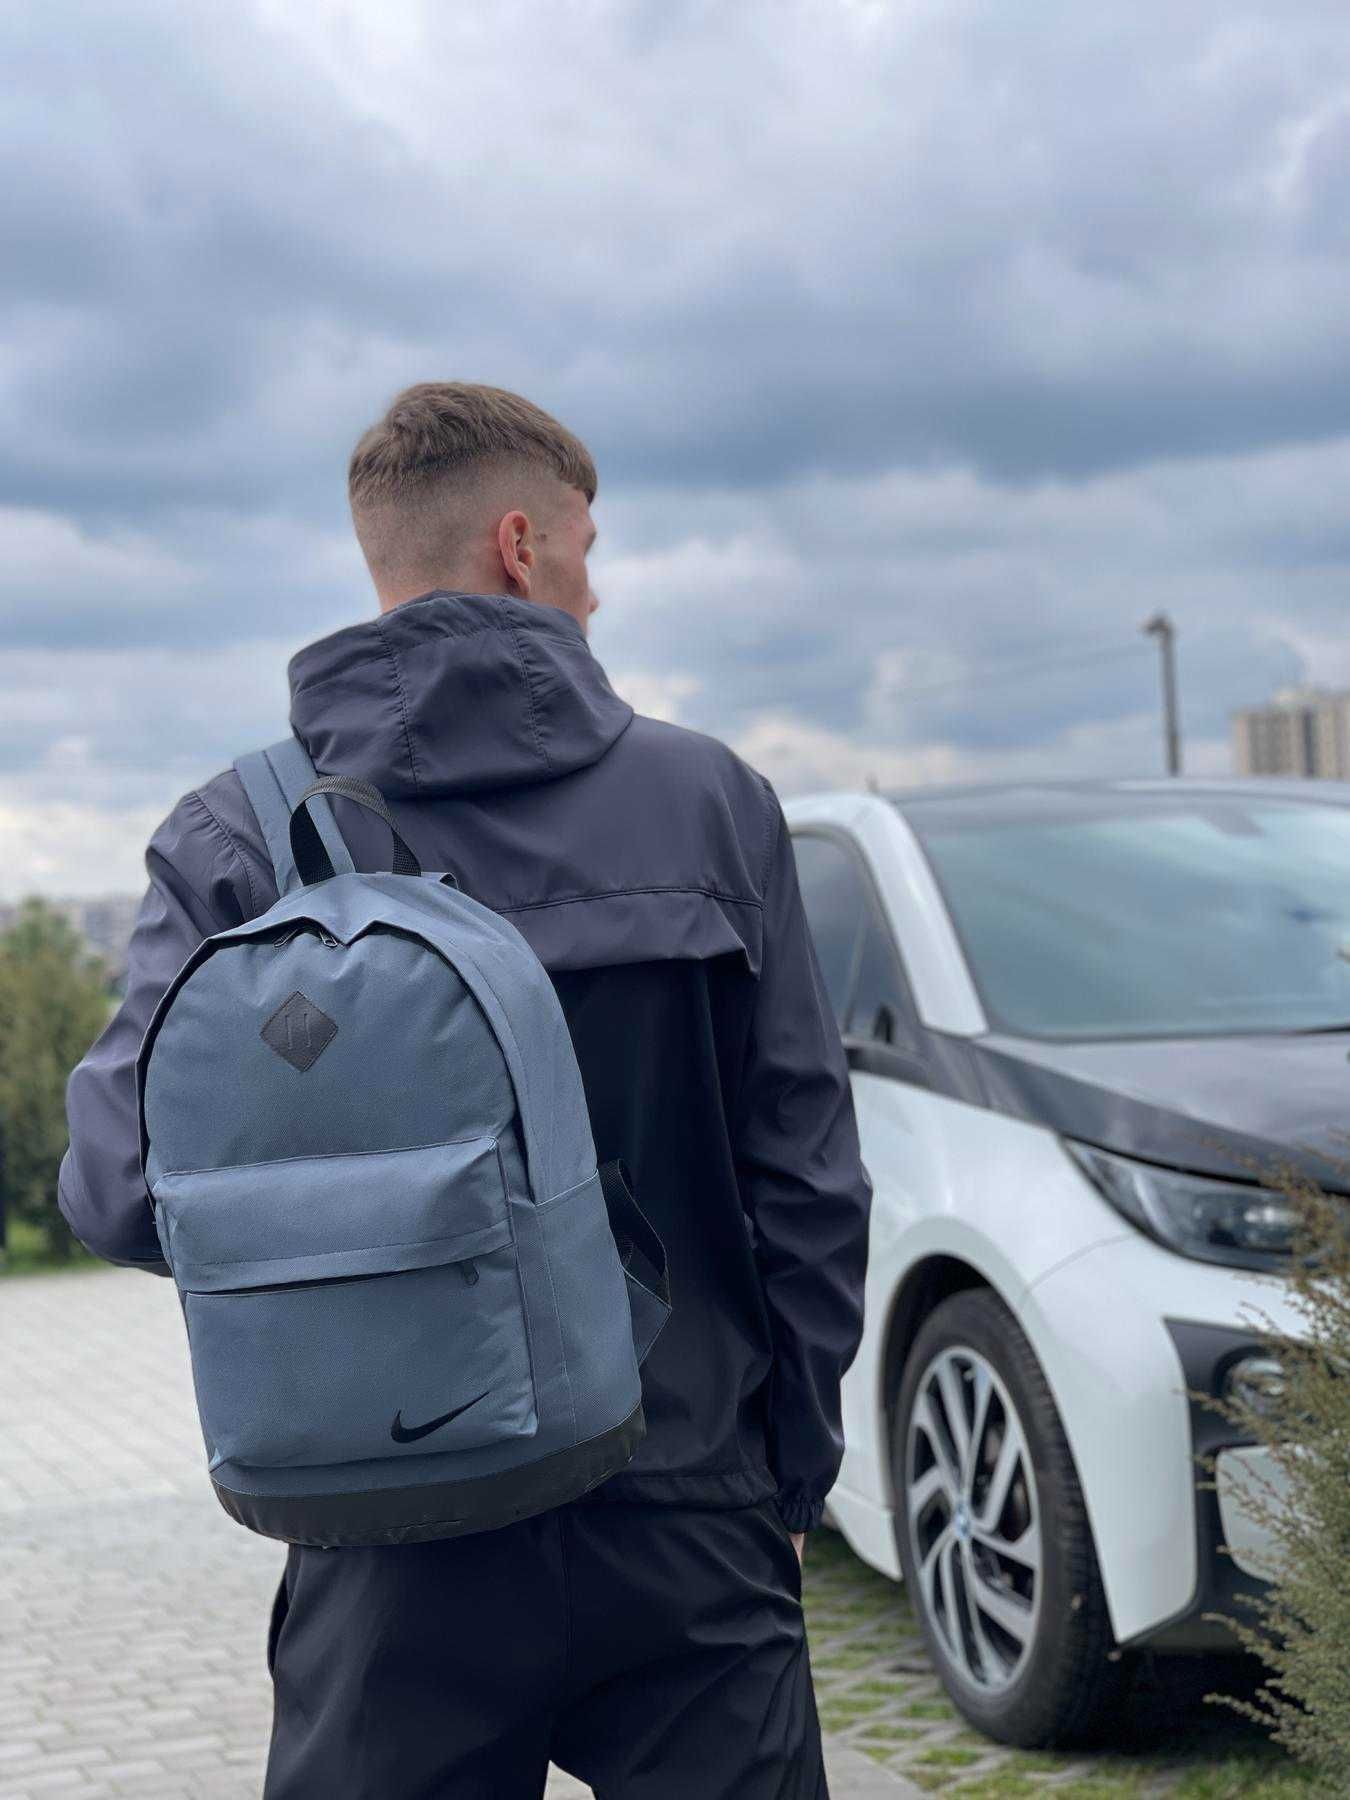 городской рюкзак,рюкзак для путешествий,спортивный рюкзак Nike